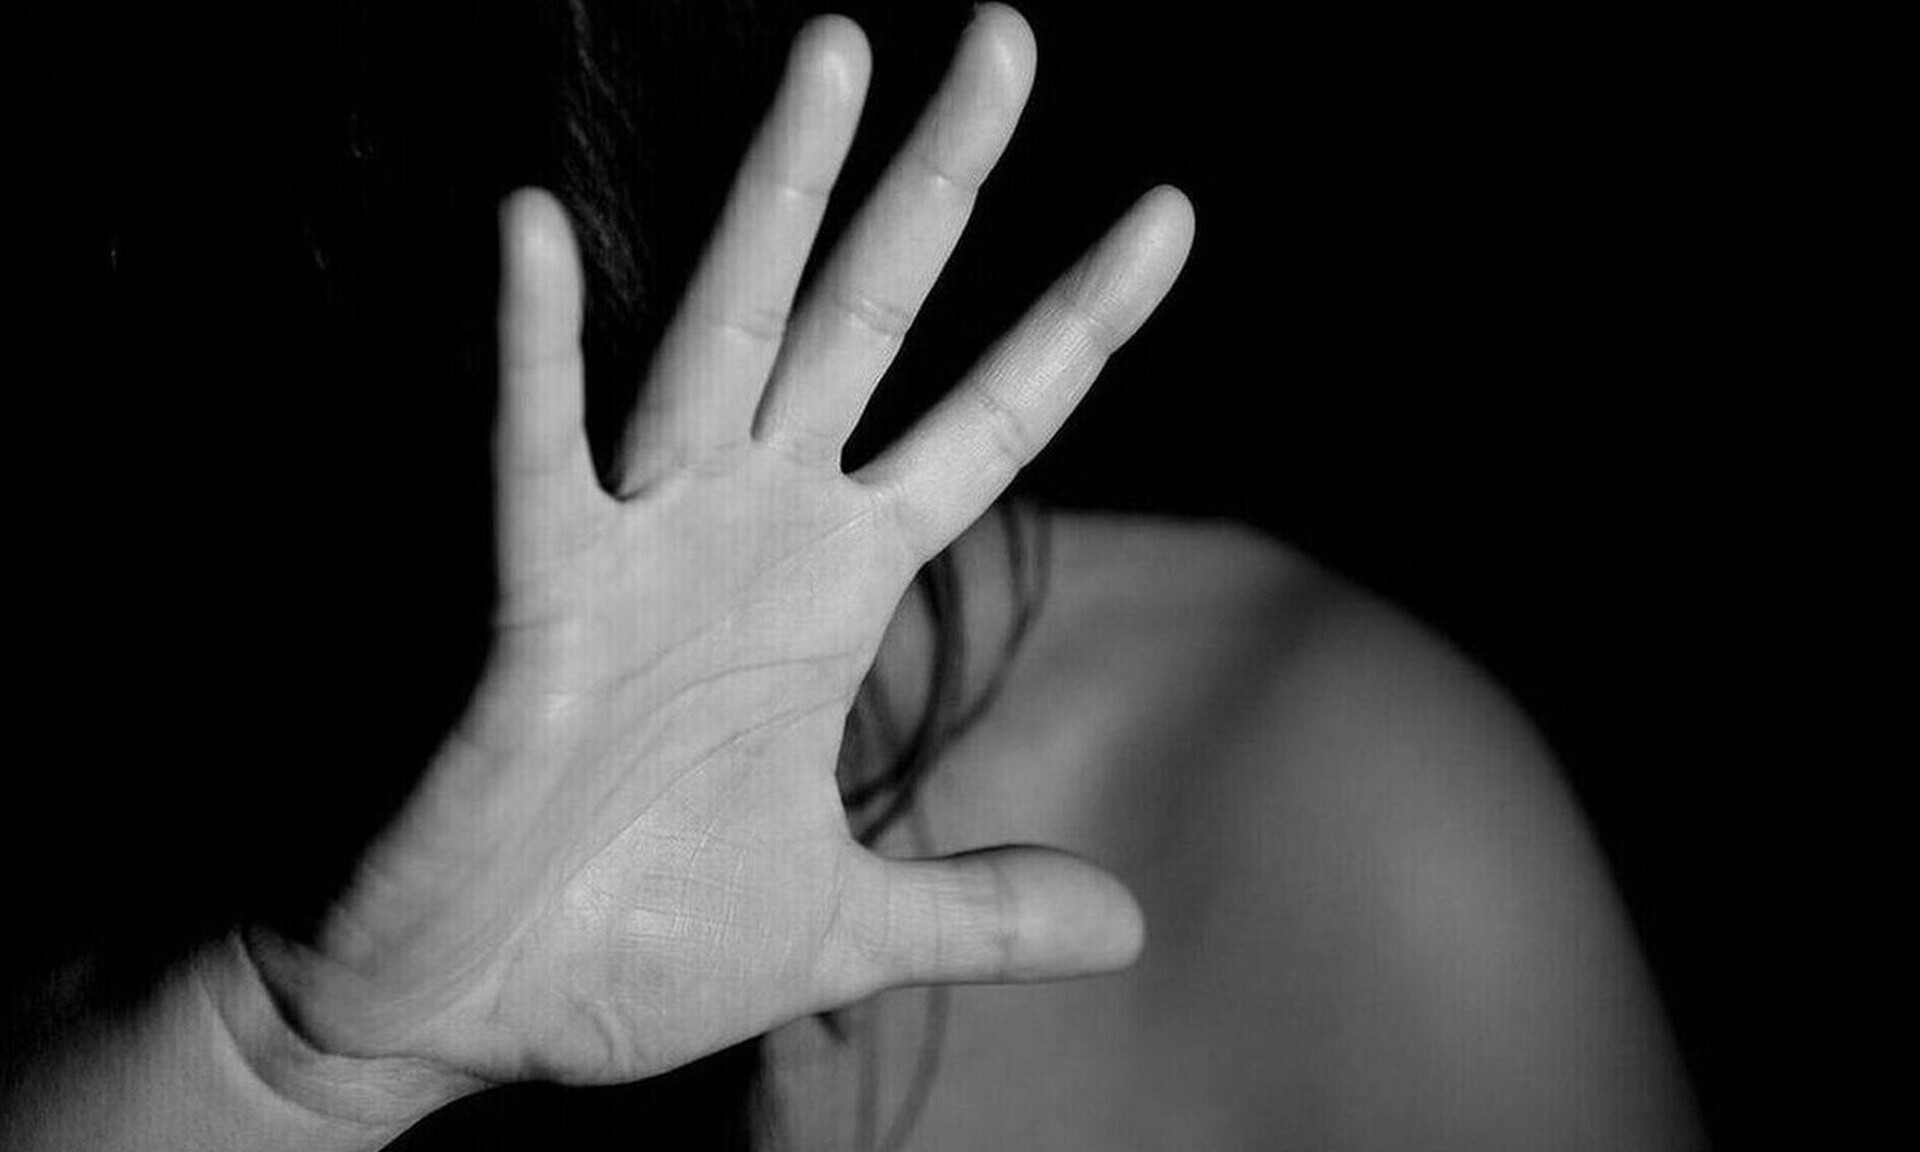 Σοκάρουν τα περιστατικά ενδοοικογενειακής βίας: Οι νέες οδηγίες για τη διαχείρισή τους